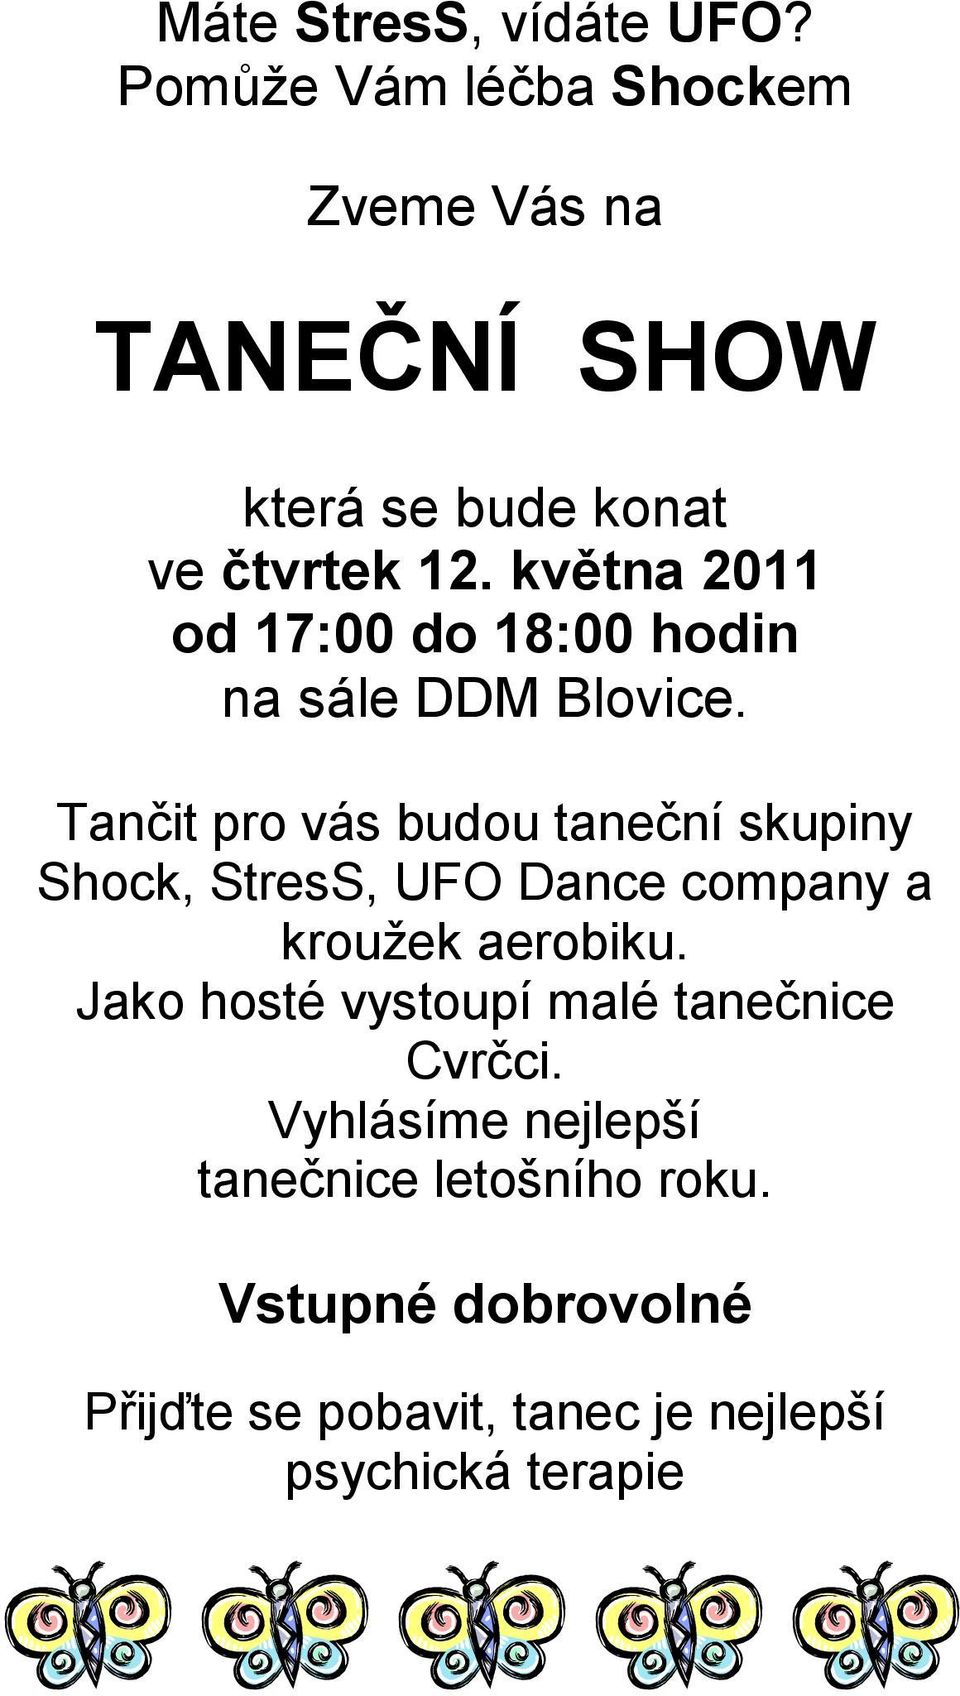 května 2011 od 17:00 do 18:00 hodin na sále DDM Blovice.